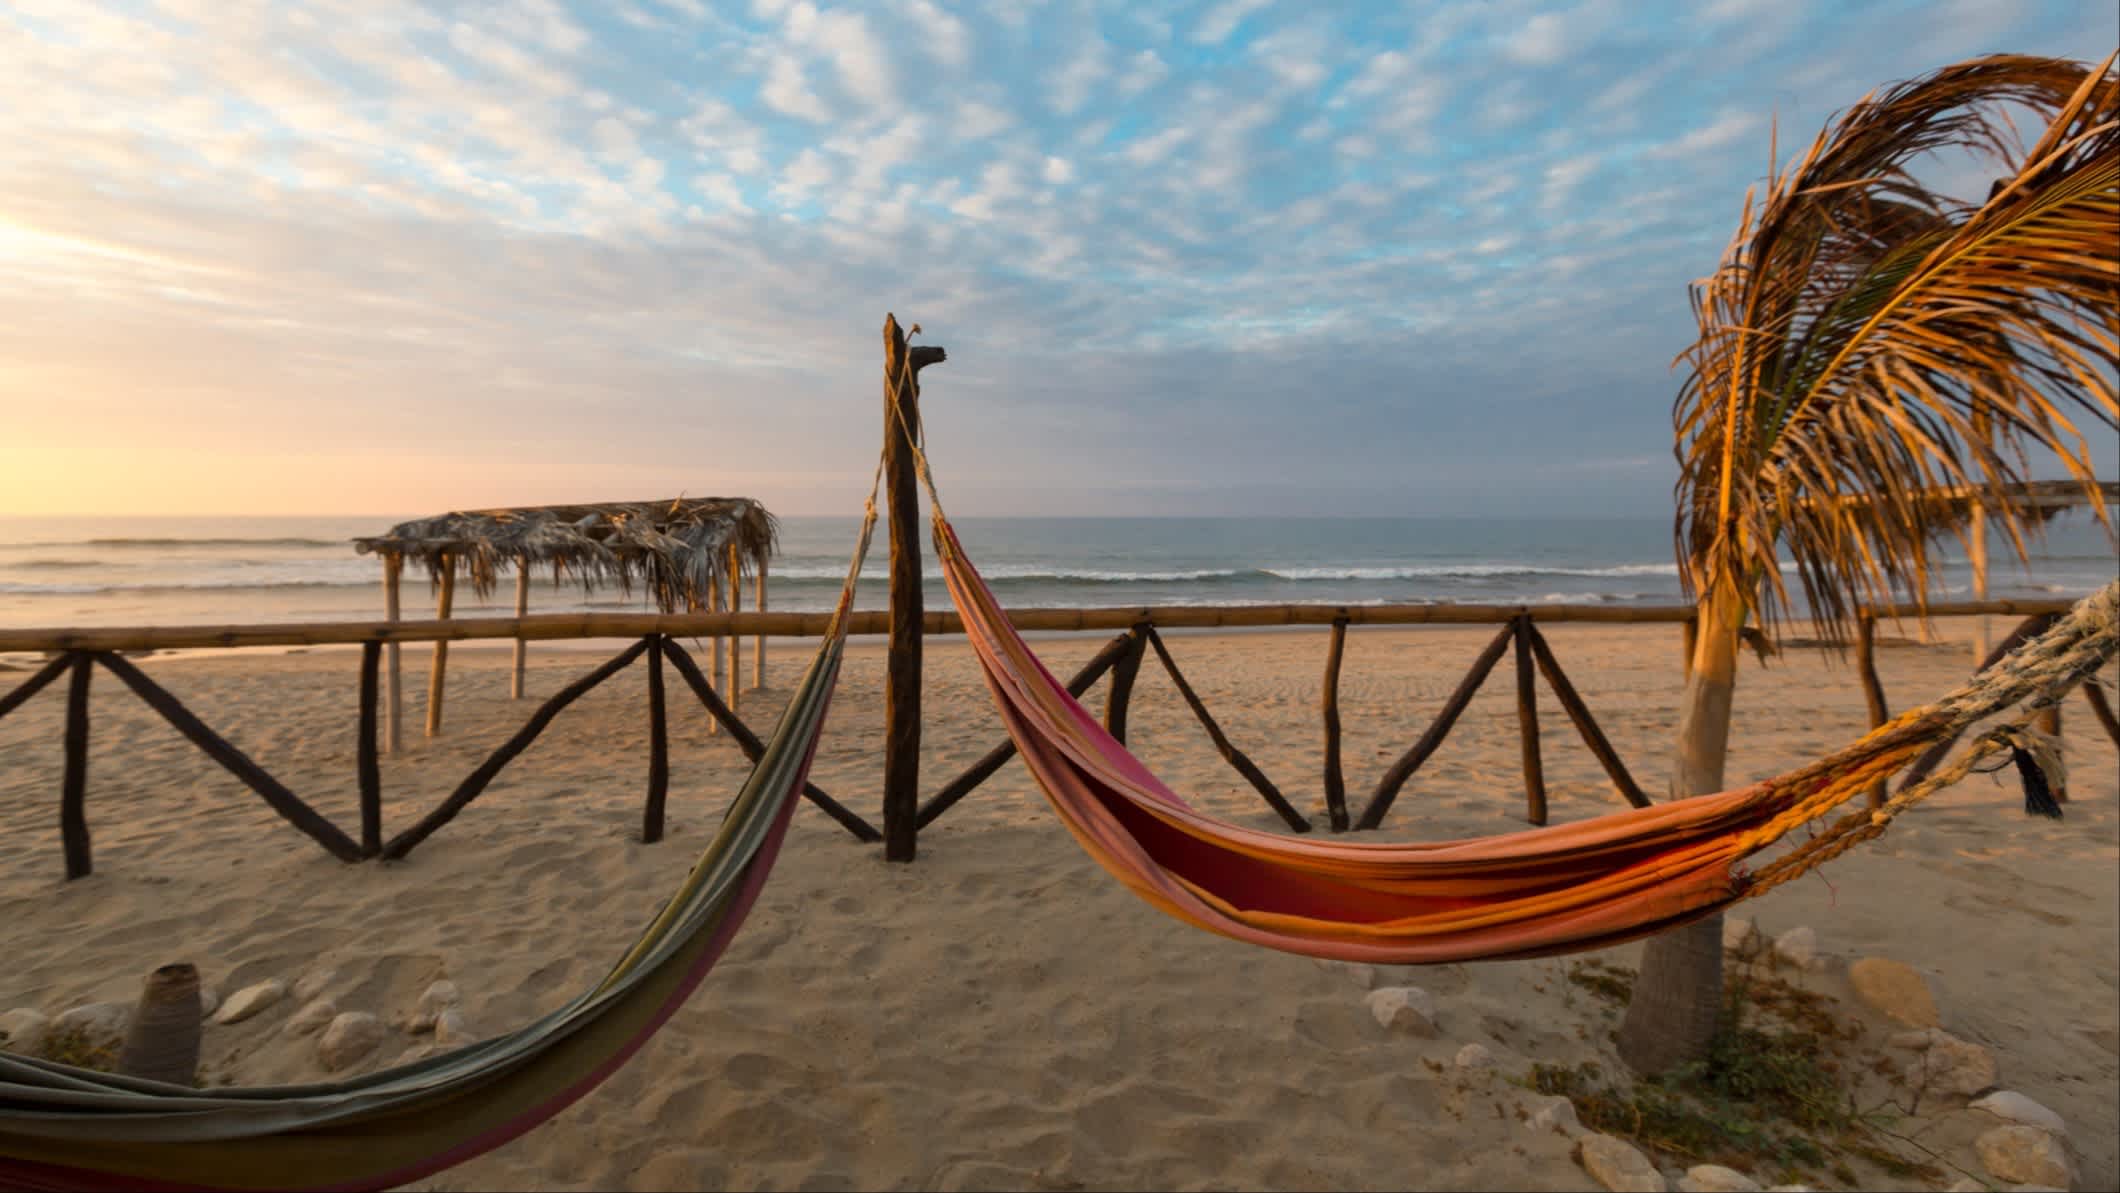 Der Strand Punta Sal in Mancora, Peru mit Hängematten, einer Palme und einer kleinen Strohhütte im Bild bei Sonnendämmerung.